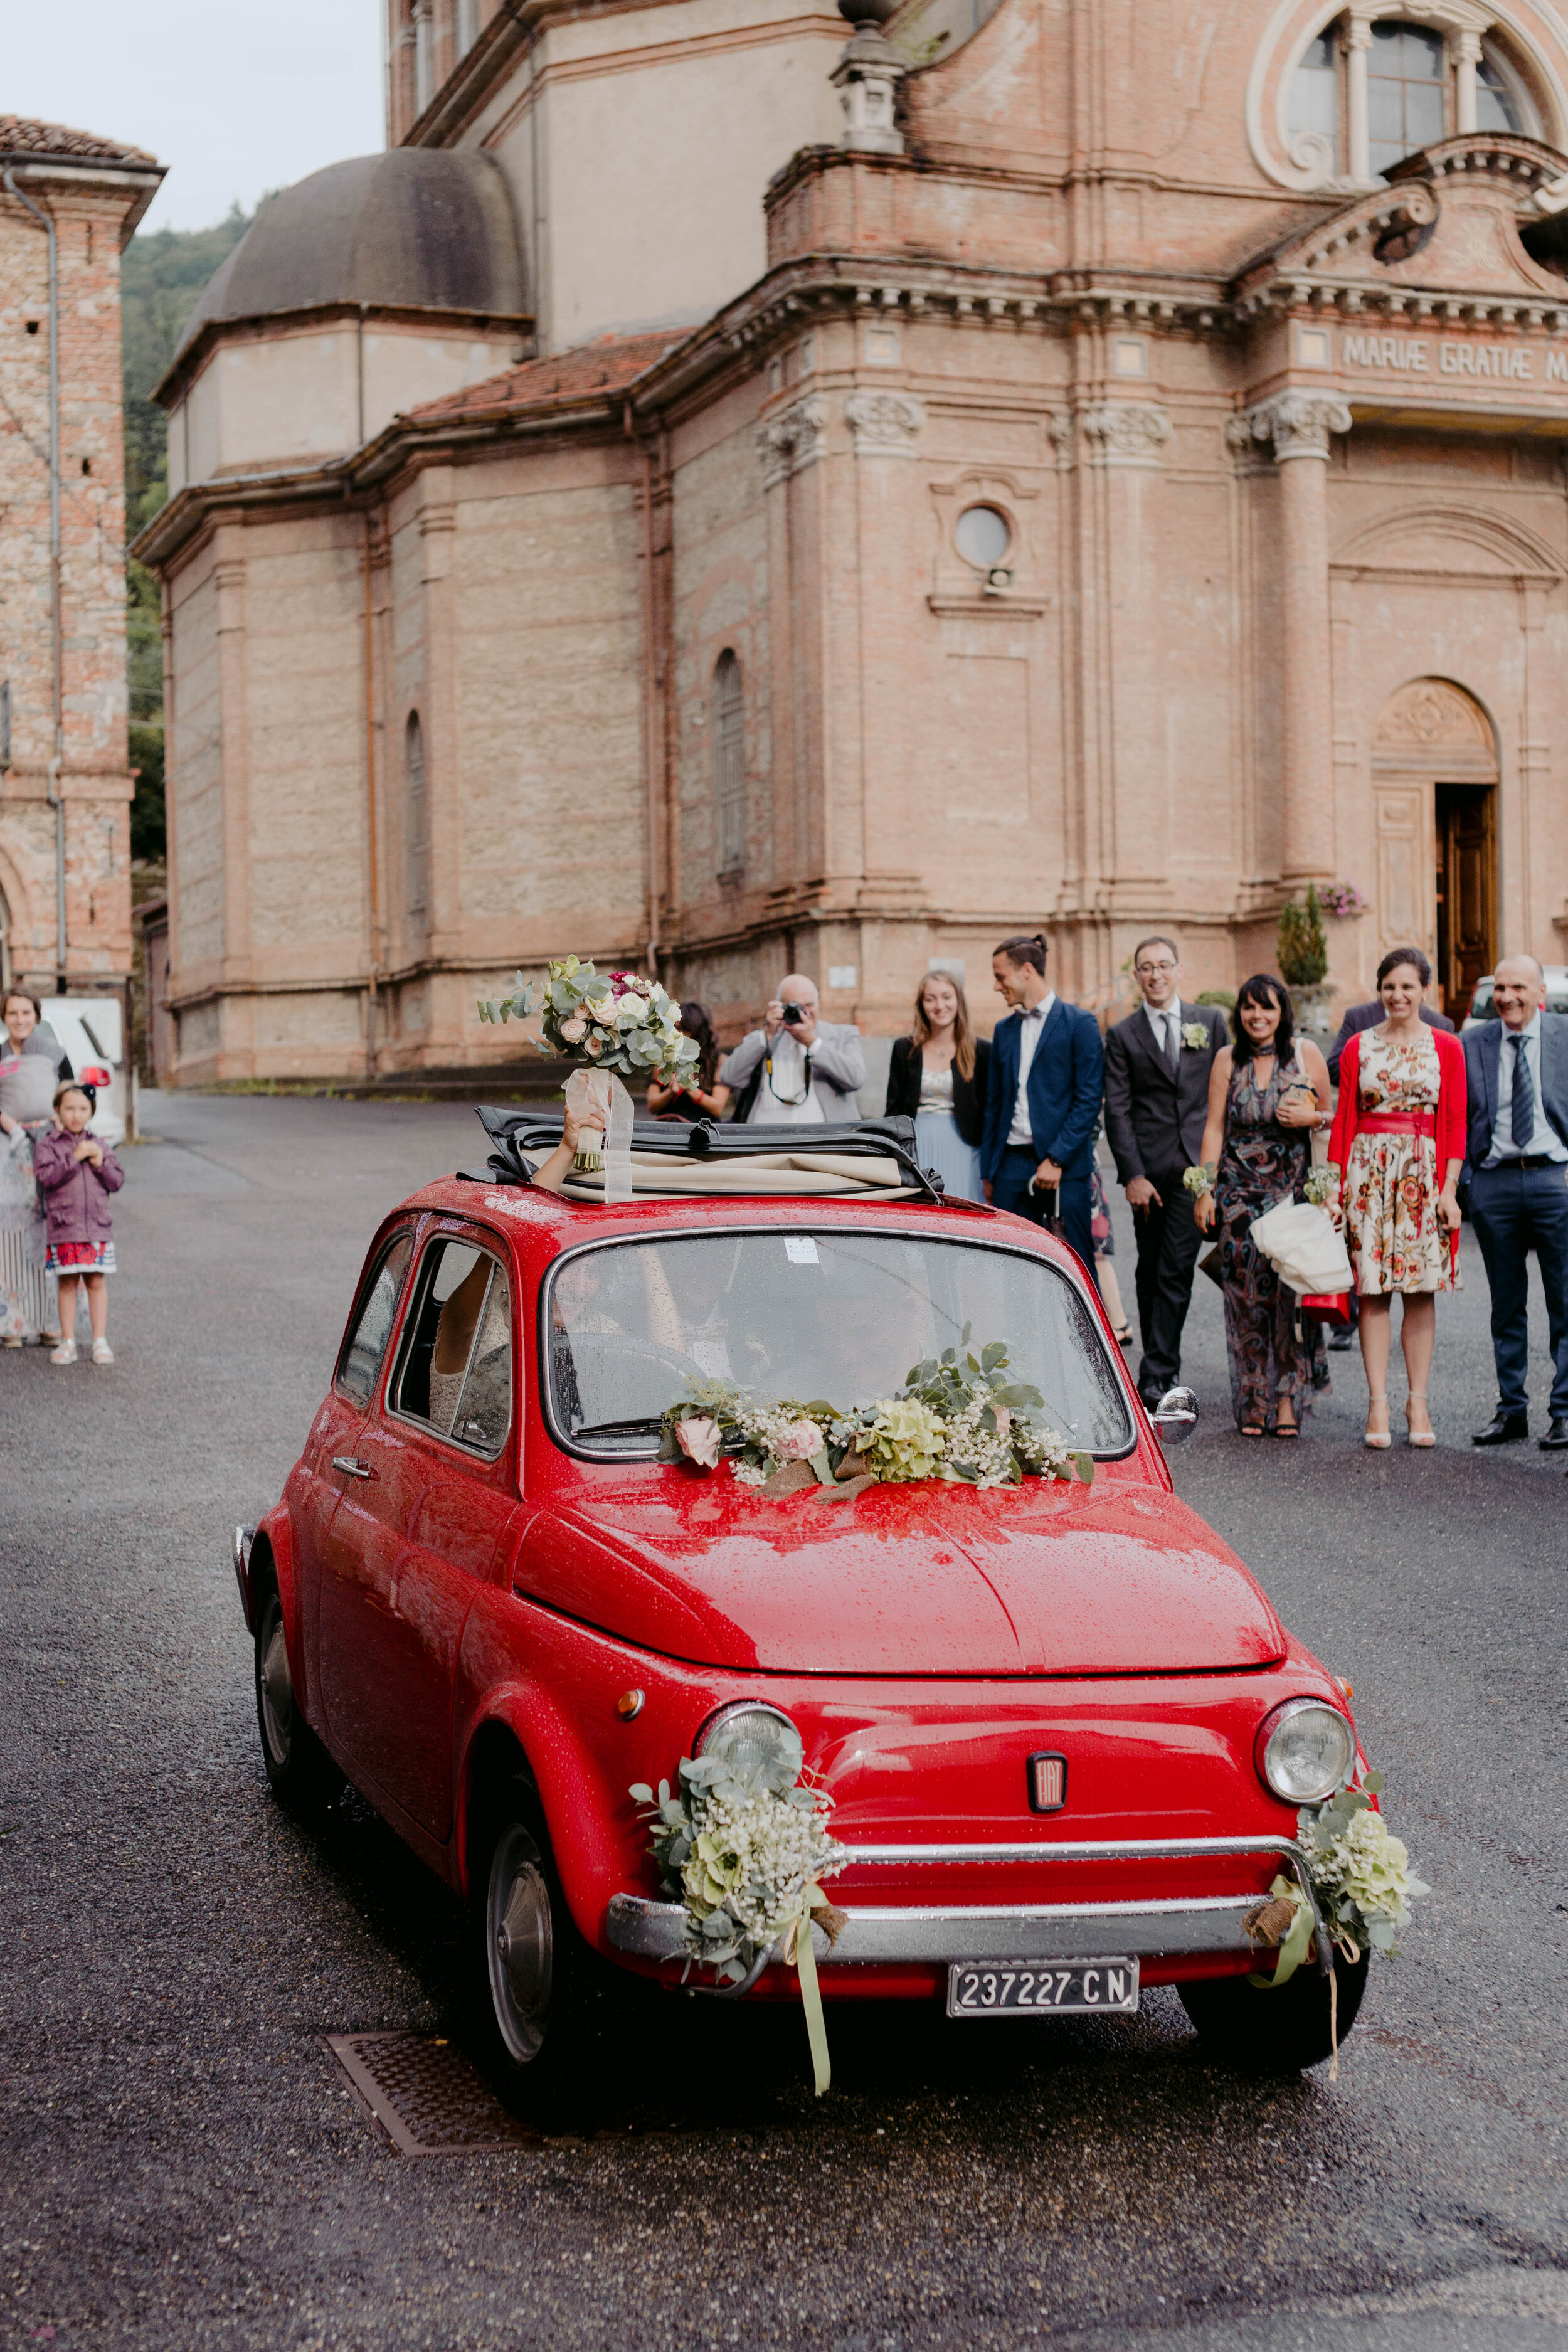 057 - Matrimonio in provincia di Cuneo - Miriam Callegari Fotografa.JPG